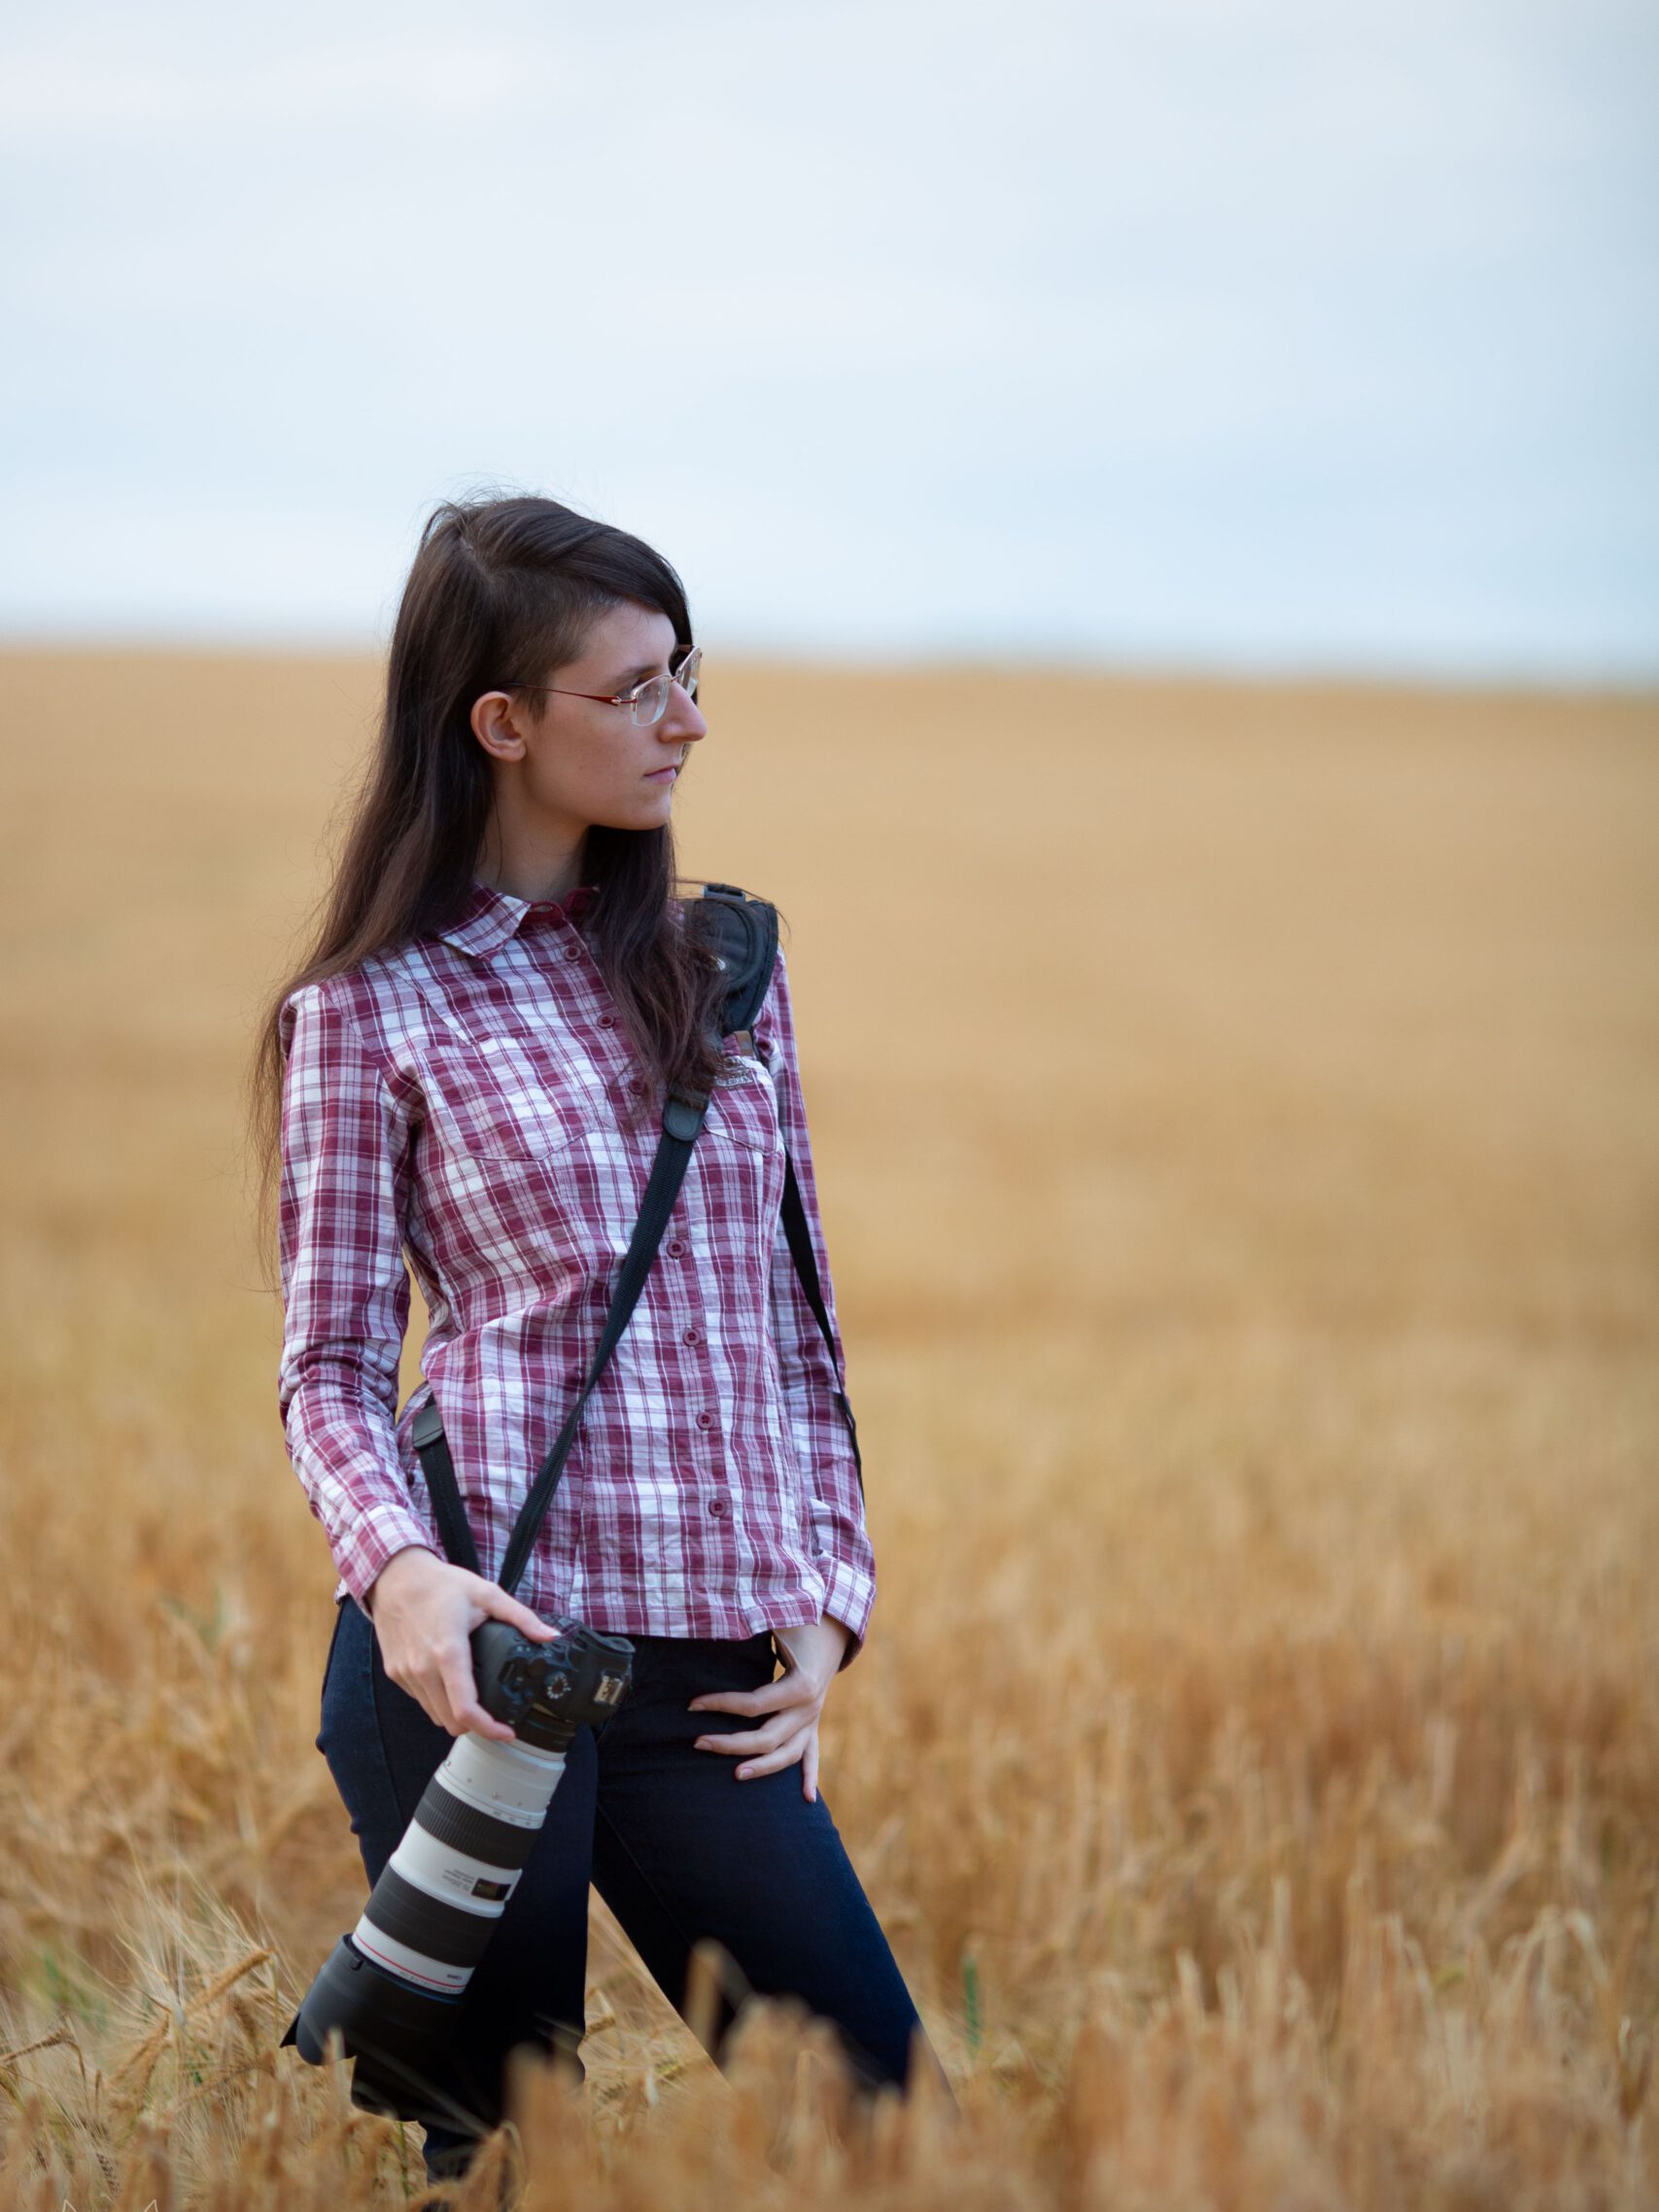 Fotografin mit rotem Karohemd und Kamera an der Seite steht in einem Getreidefeld